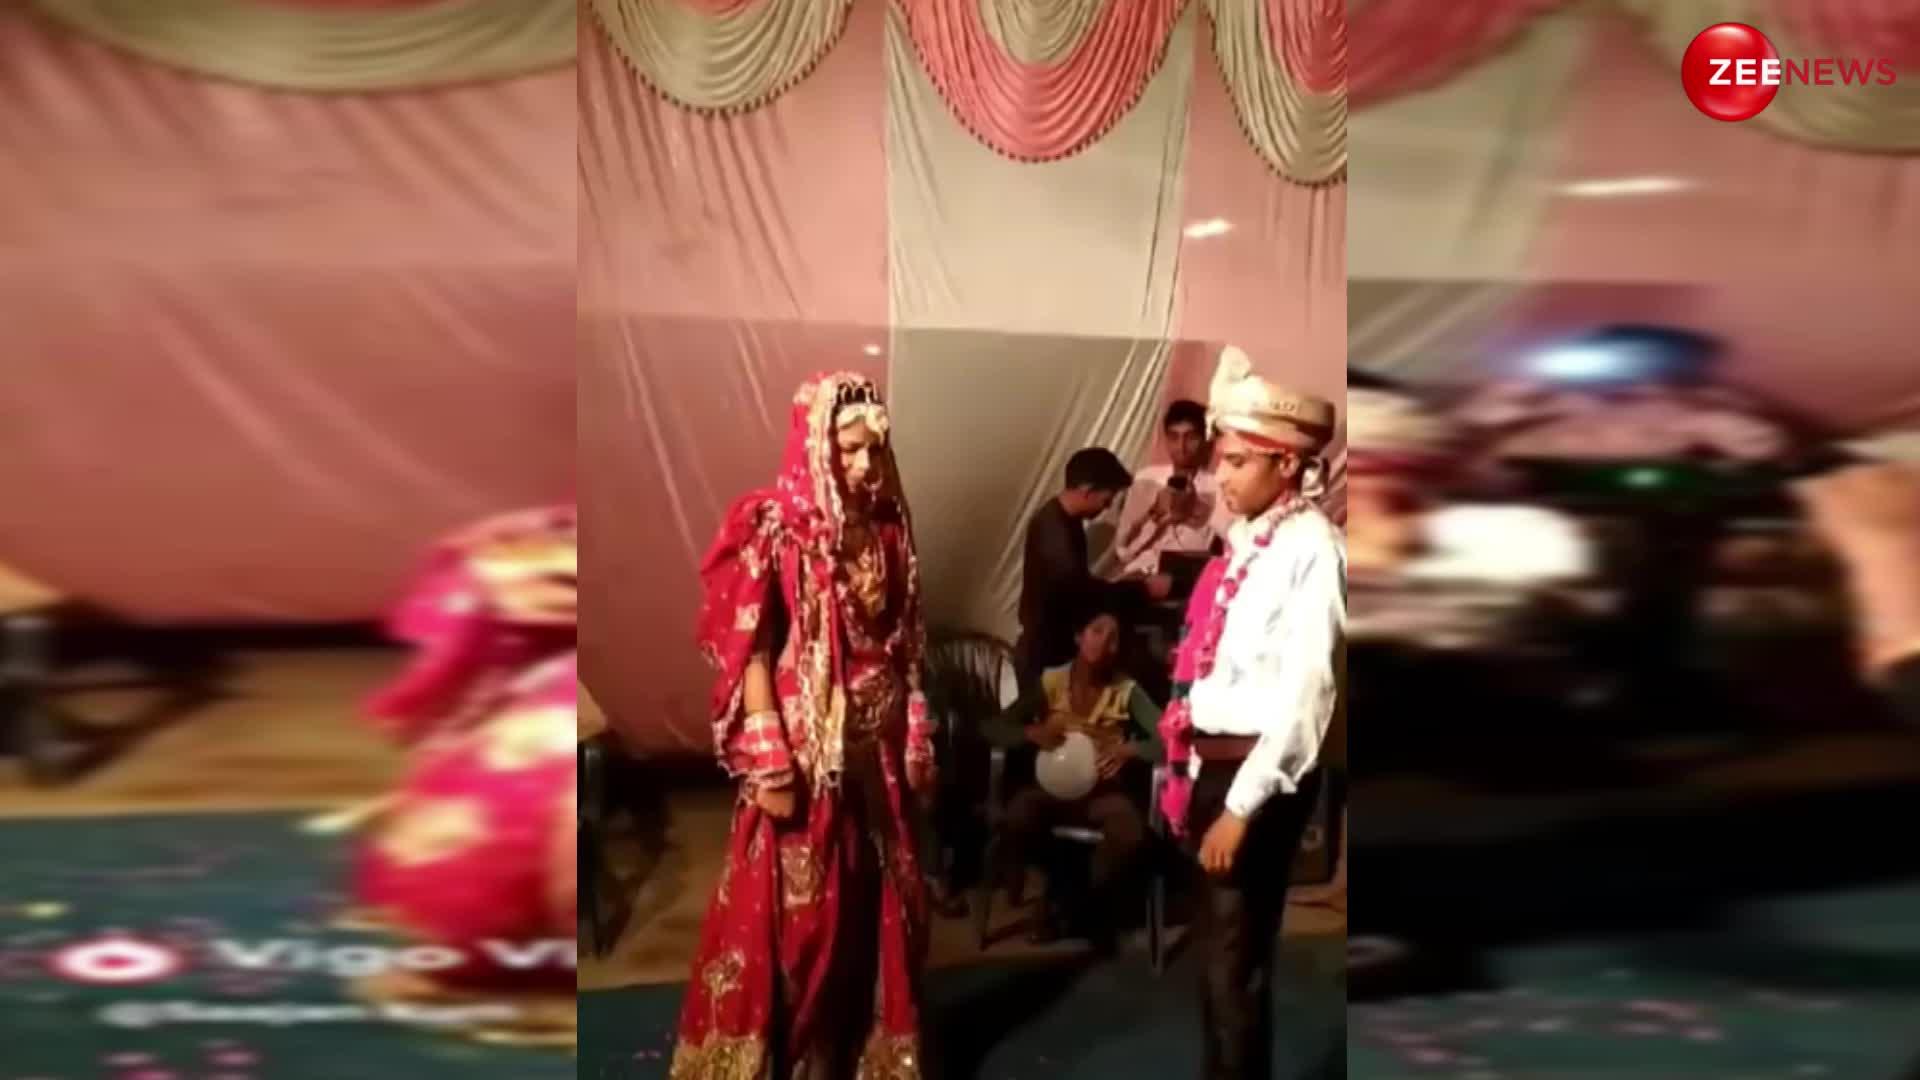 वाह रे वाह! अपनी शादी में नहीं हुआ कंट्रोल, दूल्हा-दुल्हन ने आखिर में किया ऐसा डांस; बहू को देख सास हुई हैरान